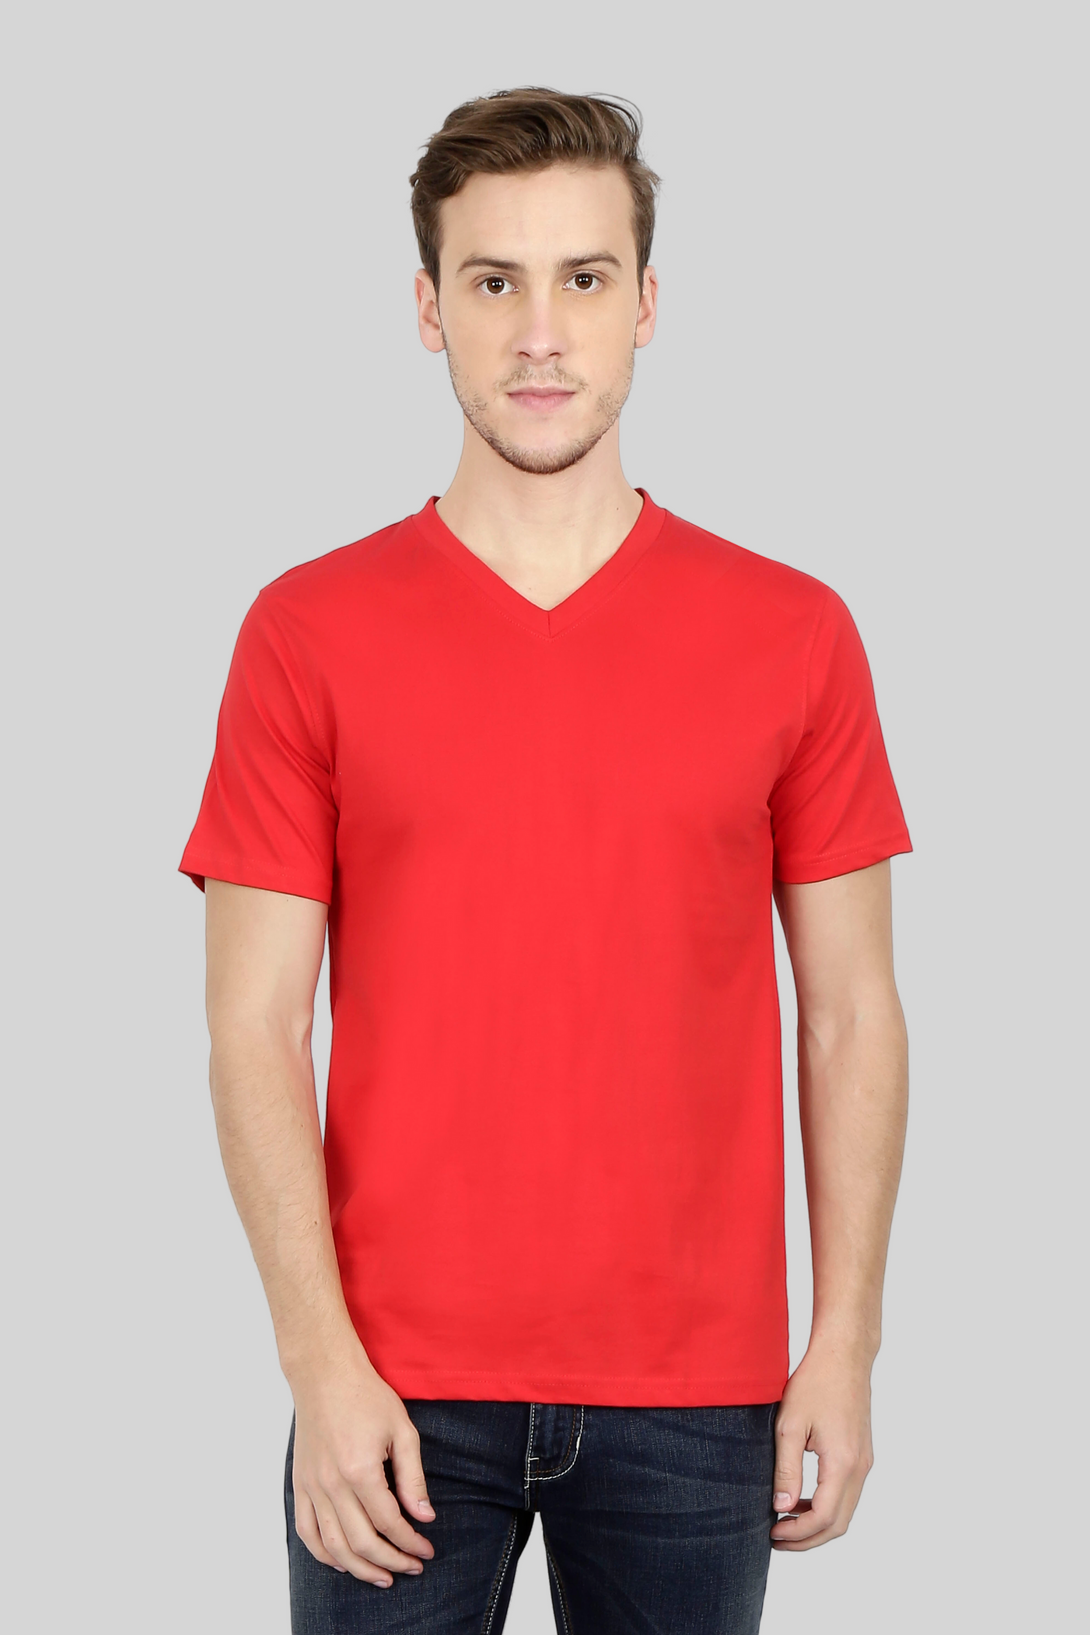 Red V Neck T-Shirt For Men - WowWaves - 1